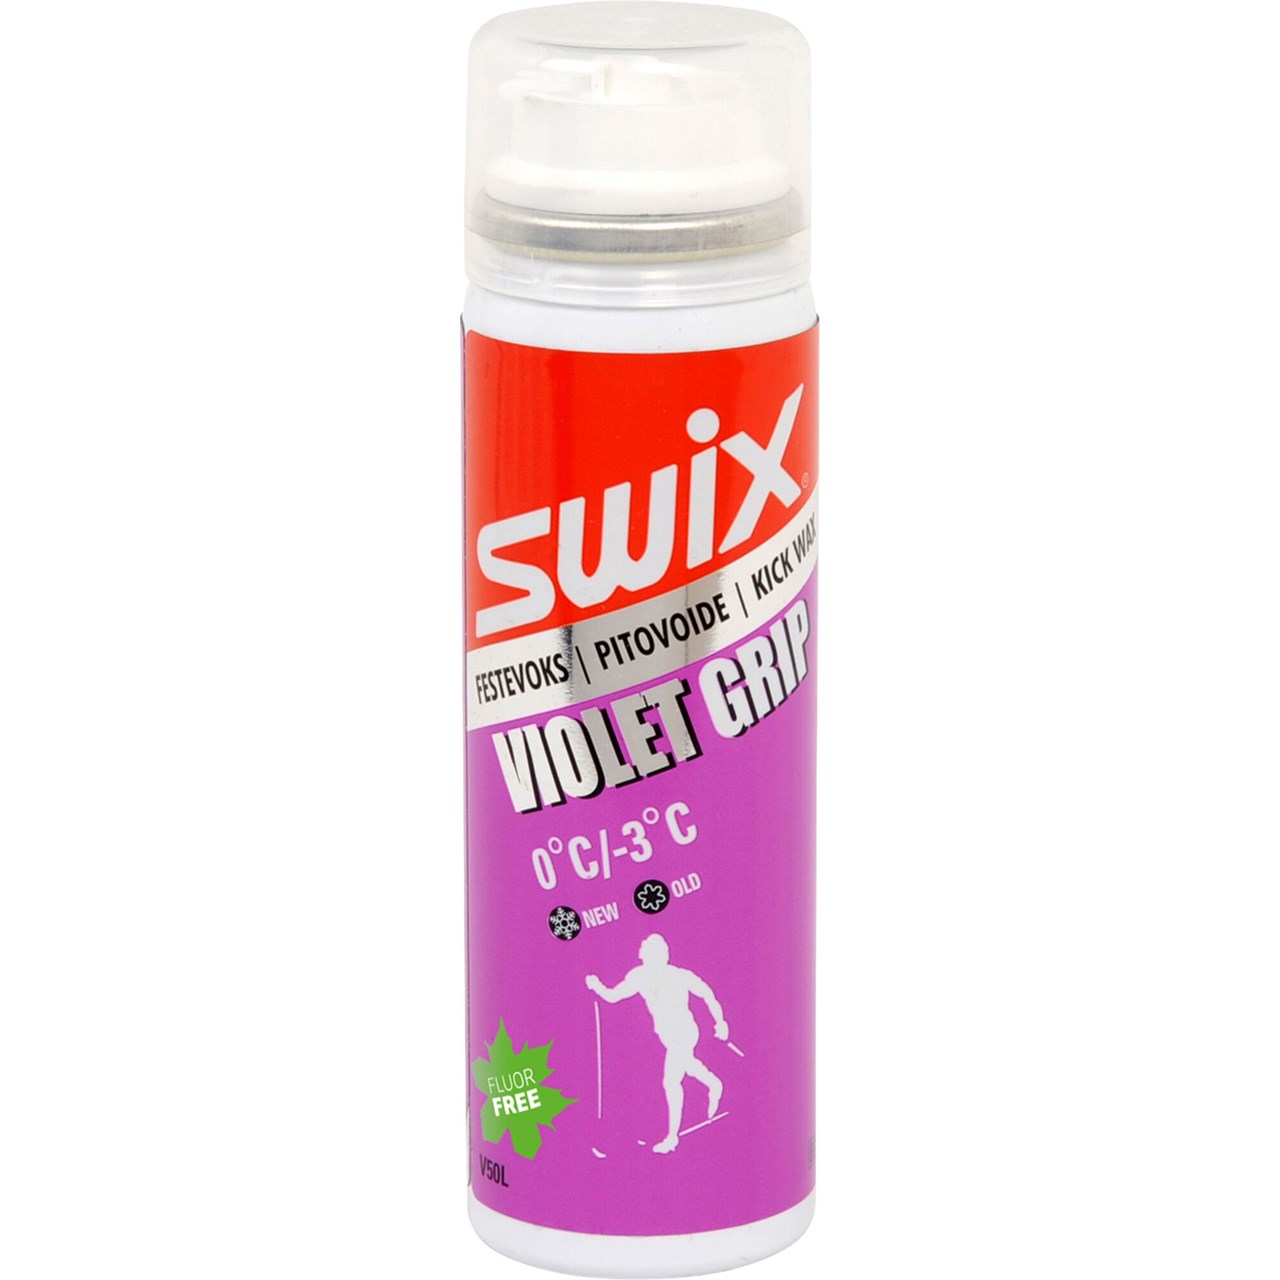 V50LC Violet grip spray 0/-3